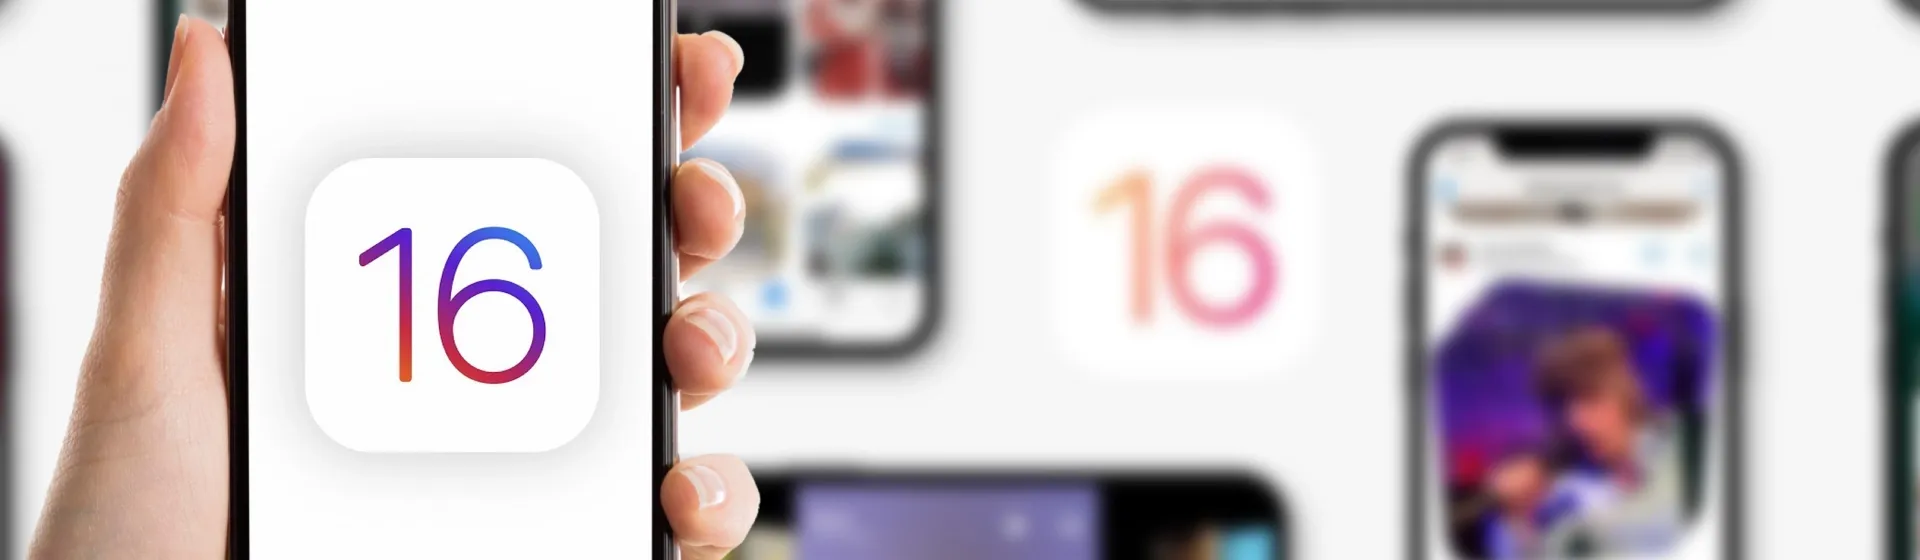 iOS 16 permitirá jogar no iPhone com controles do Nintendo Switch